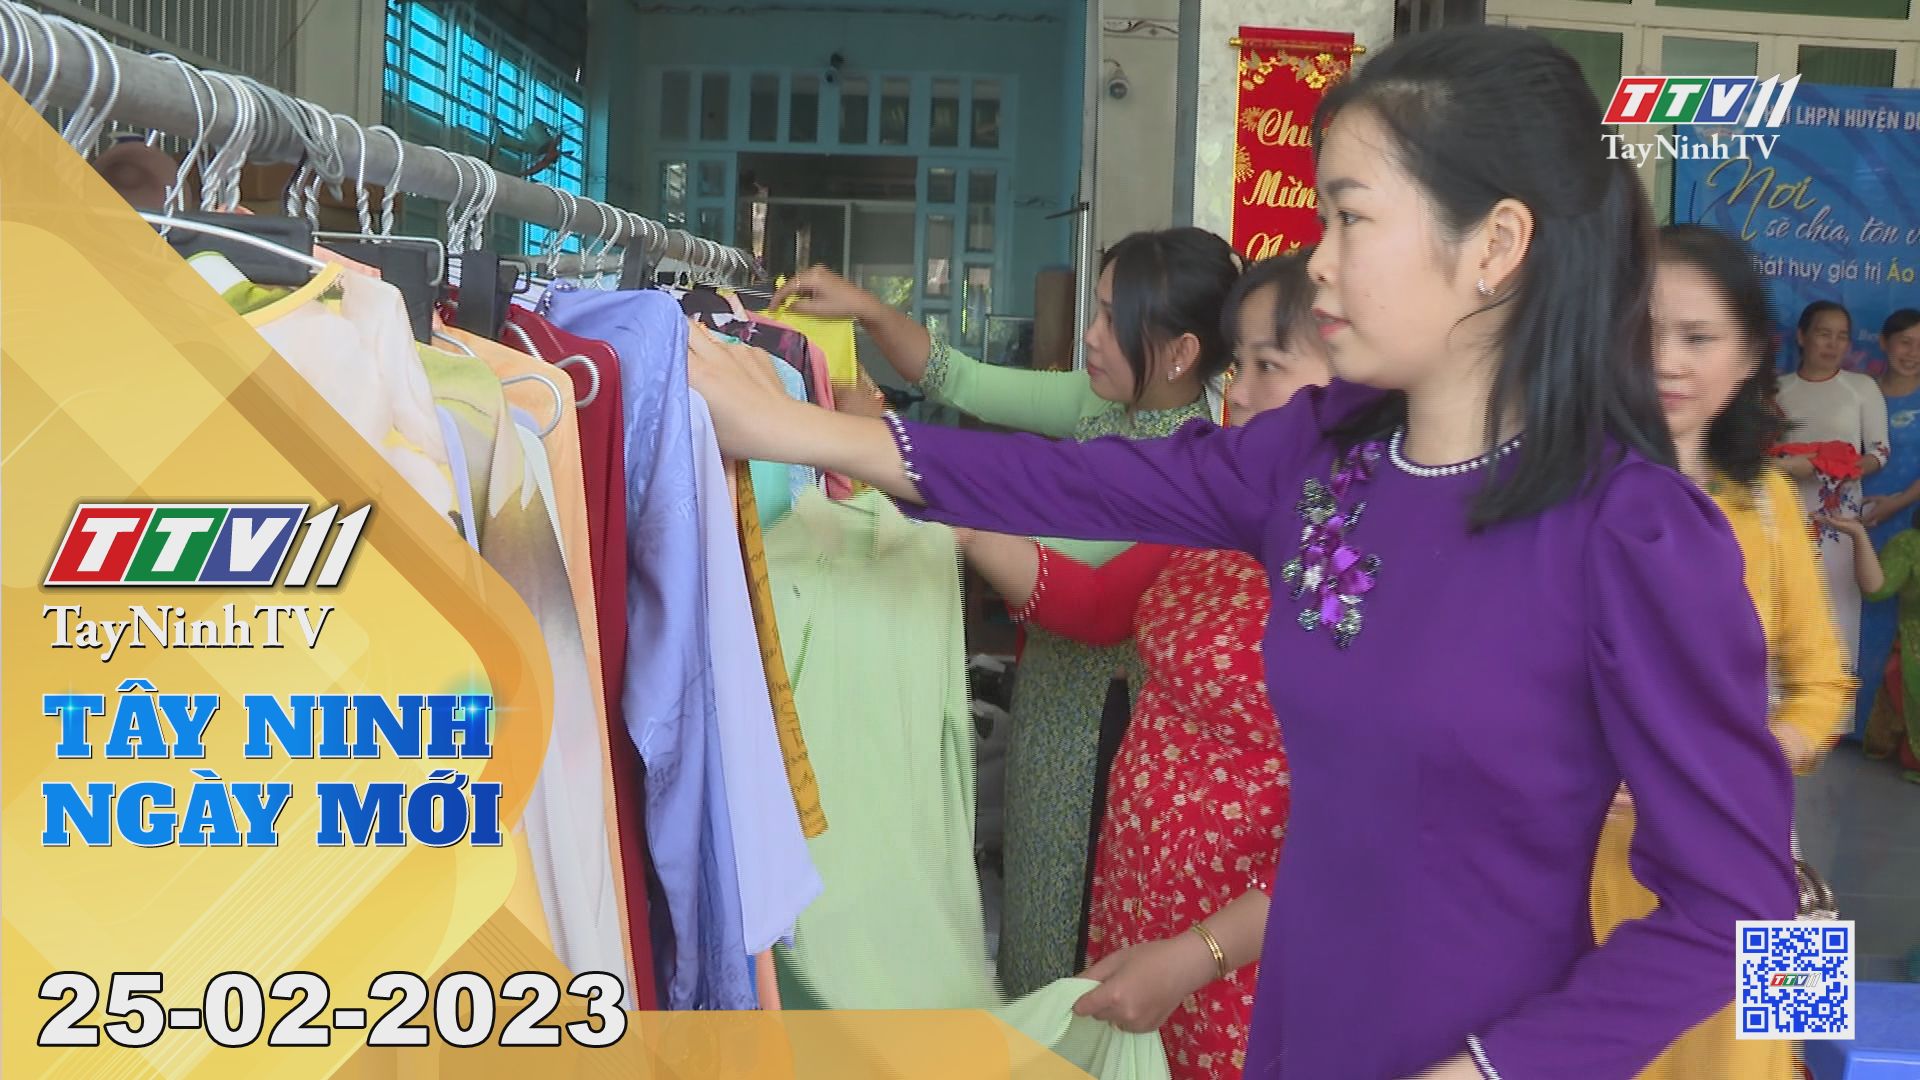 Tây Ninh ngày mới 25-02-2023 | Tin tức hôm nay | TayNinhTV